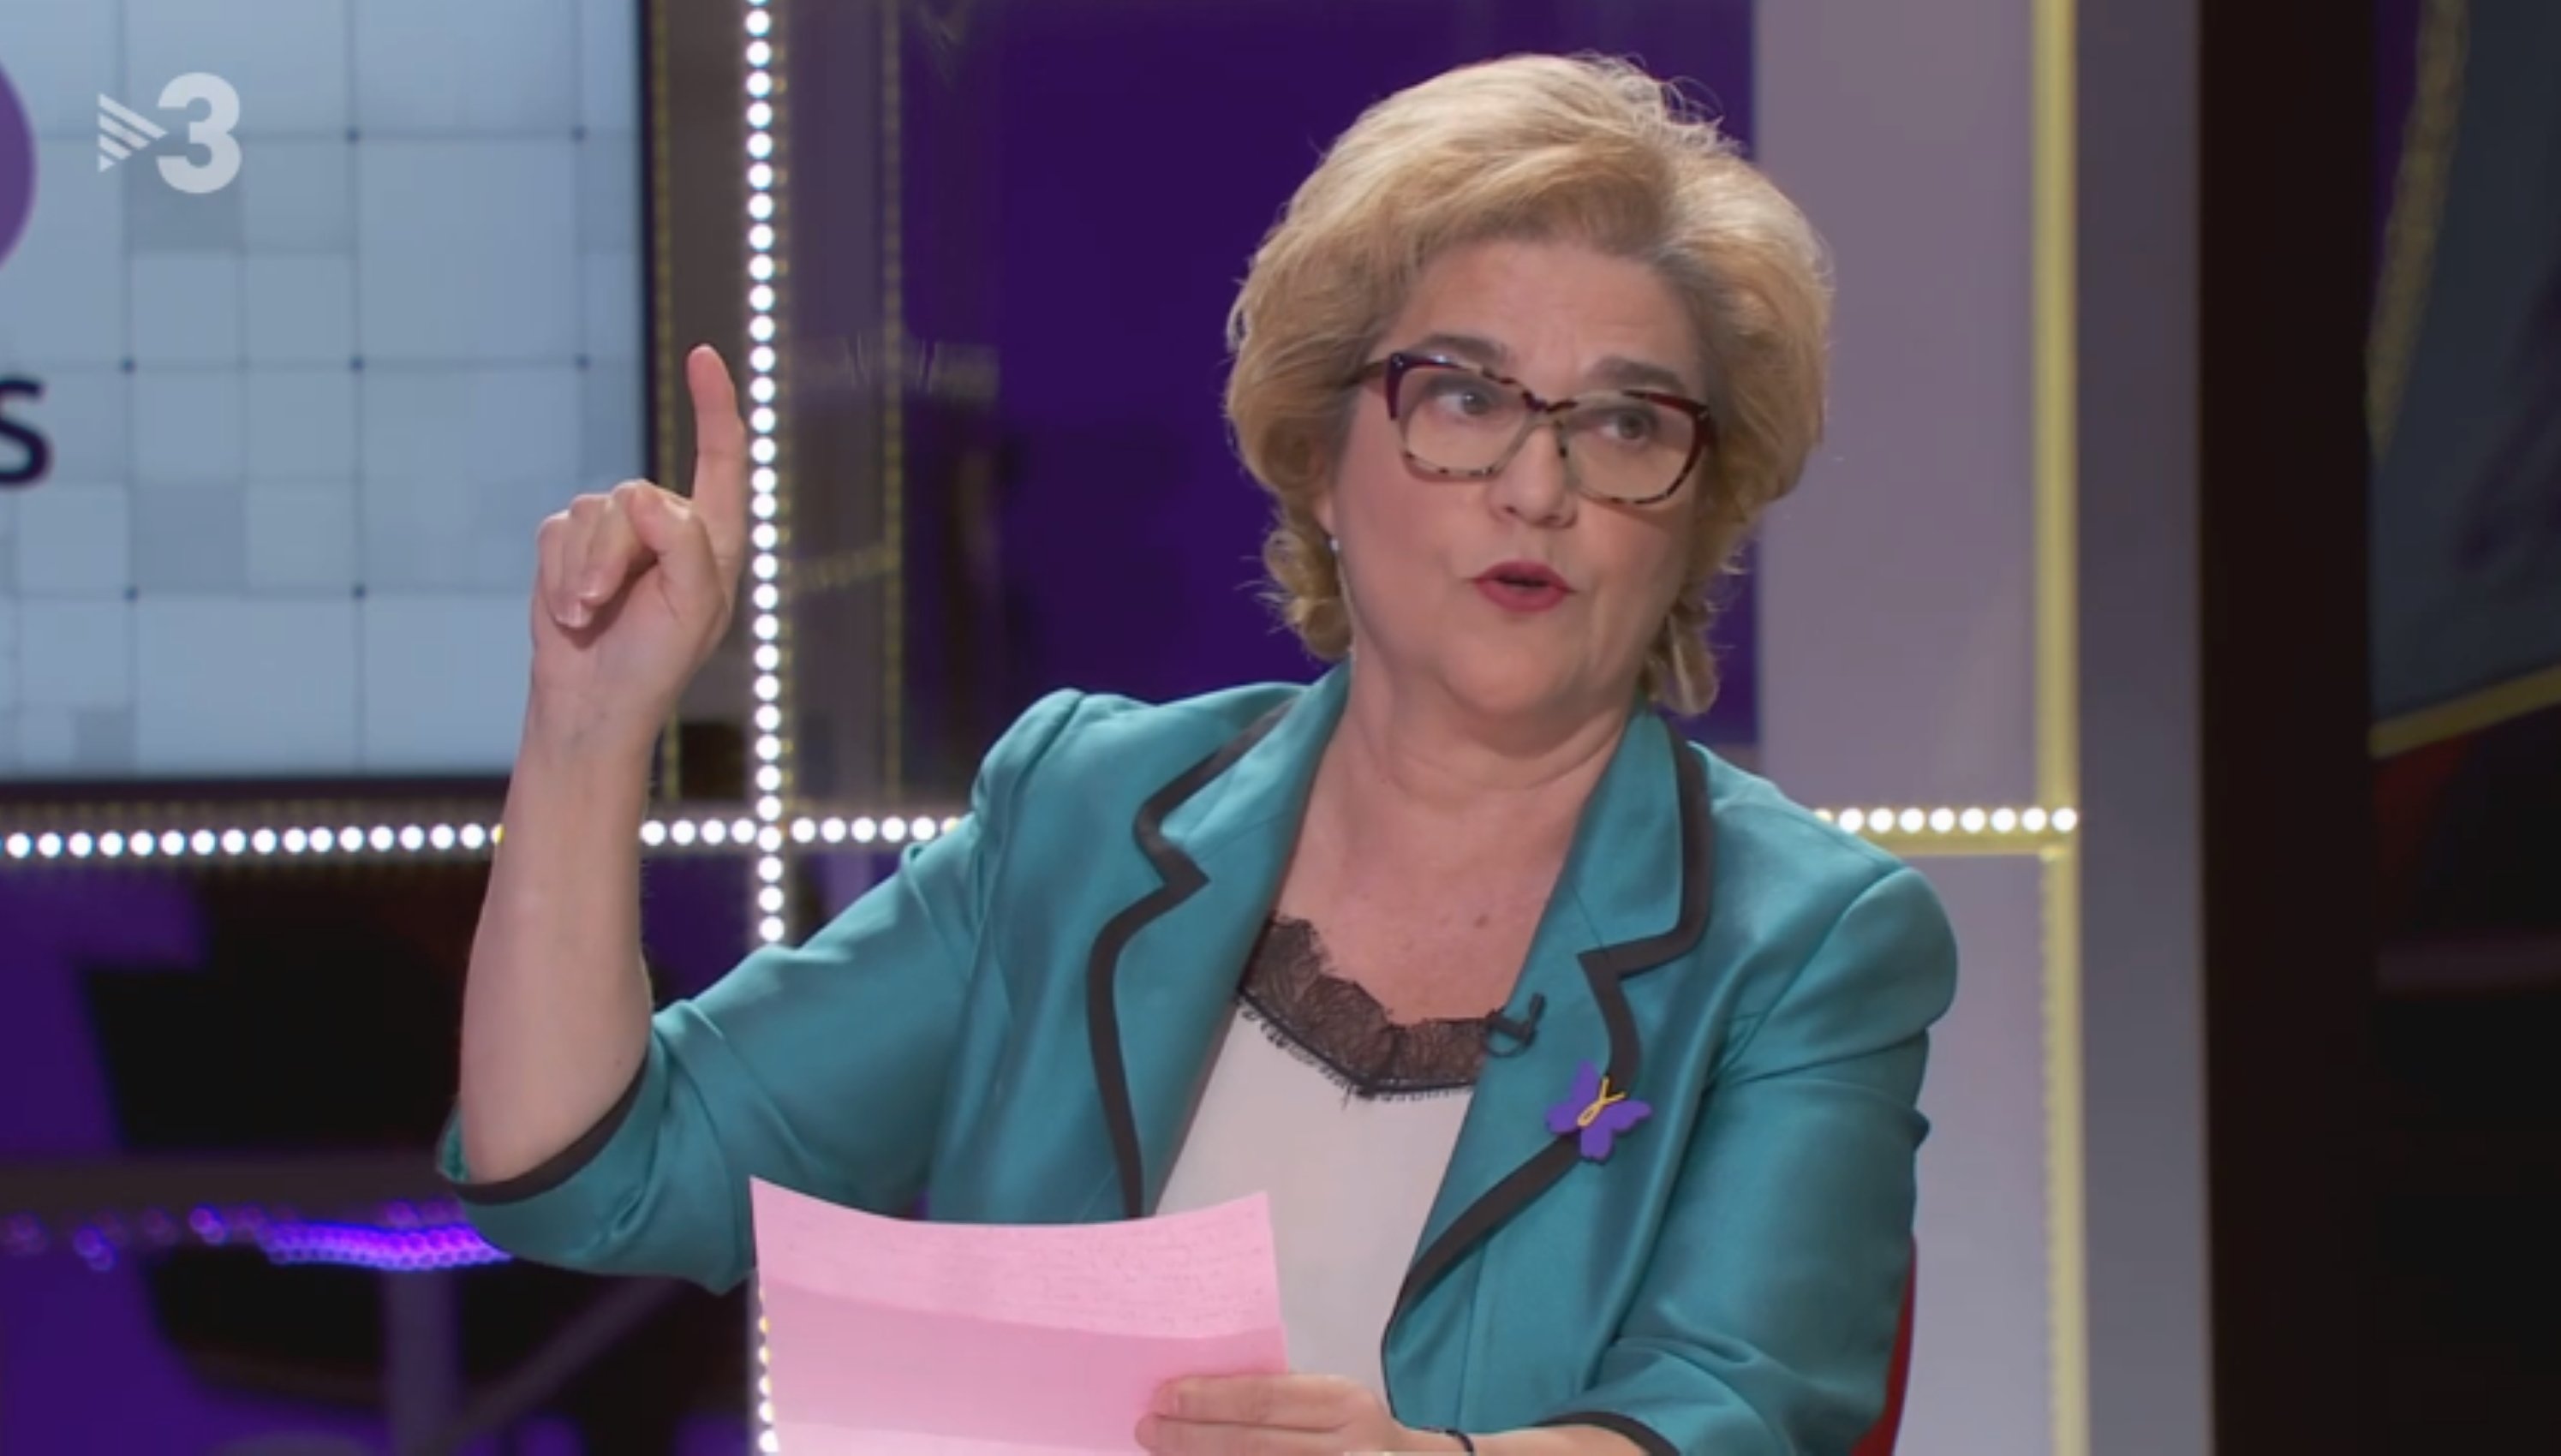 Rahola ensorra (molt més) Joan Carles a TV3: expulsat, mentider i surrealista